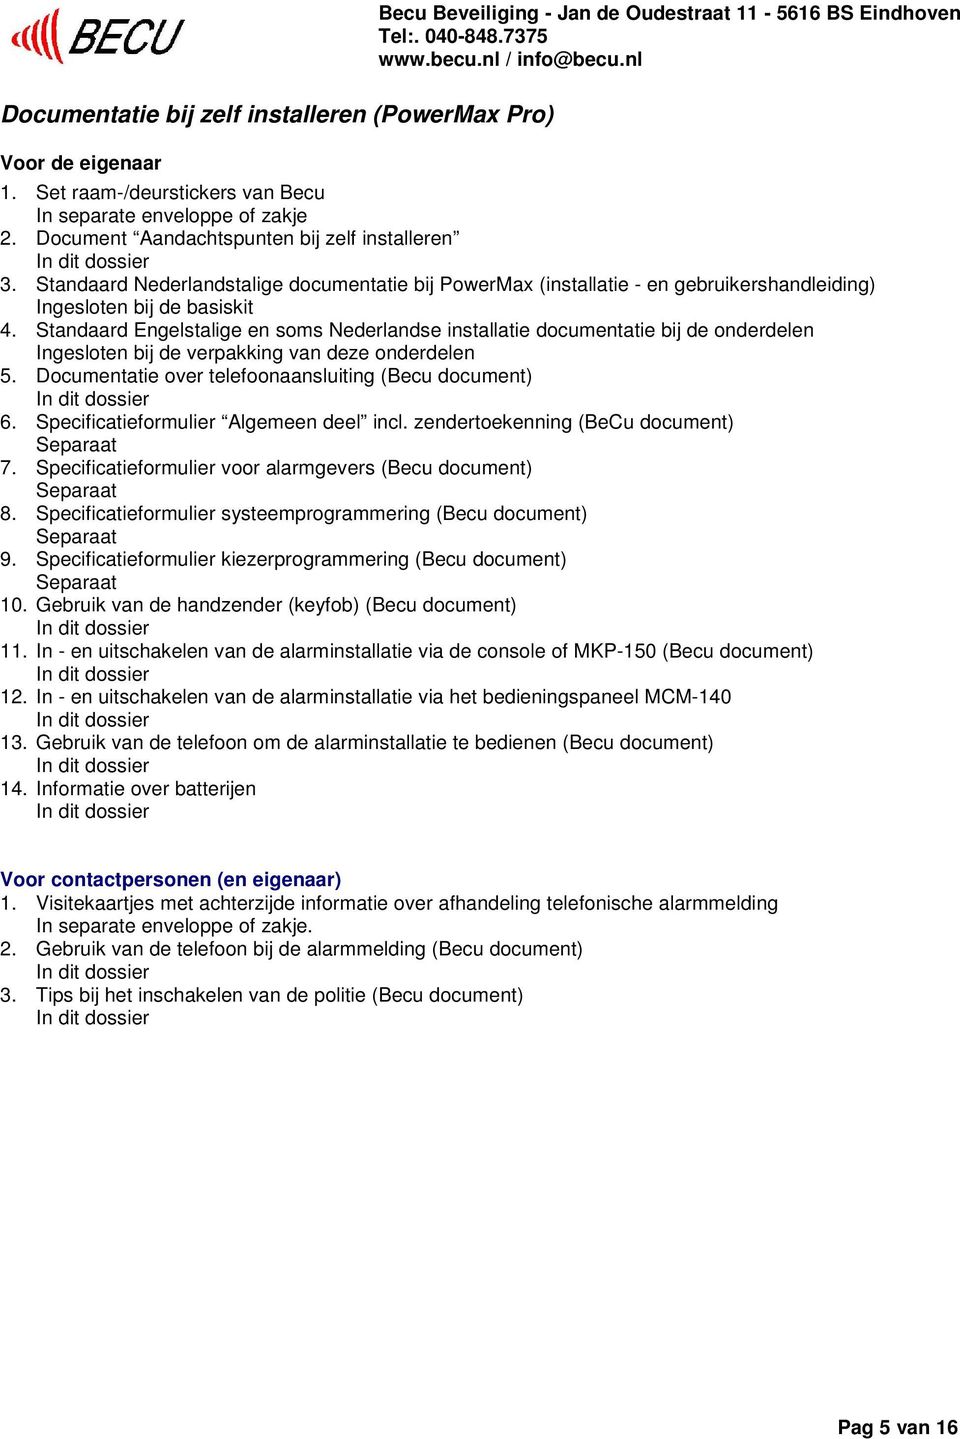 Standaard Engelstalige en soms Nederlandse installatie documentatie bij de onderdelen Ingesloten bij de verpakking van deze onderdelen 5. Documentatie over telefoonaansluiting (Becu document) 6.